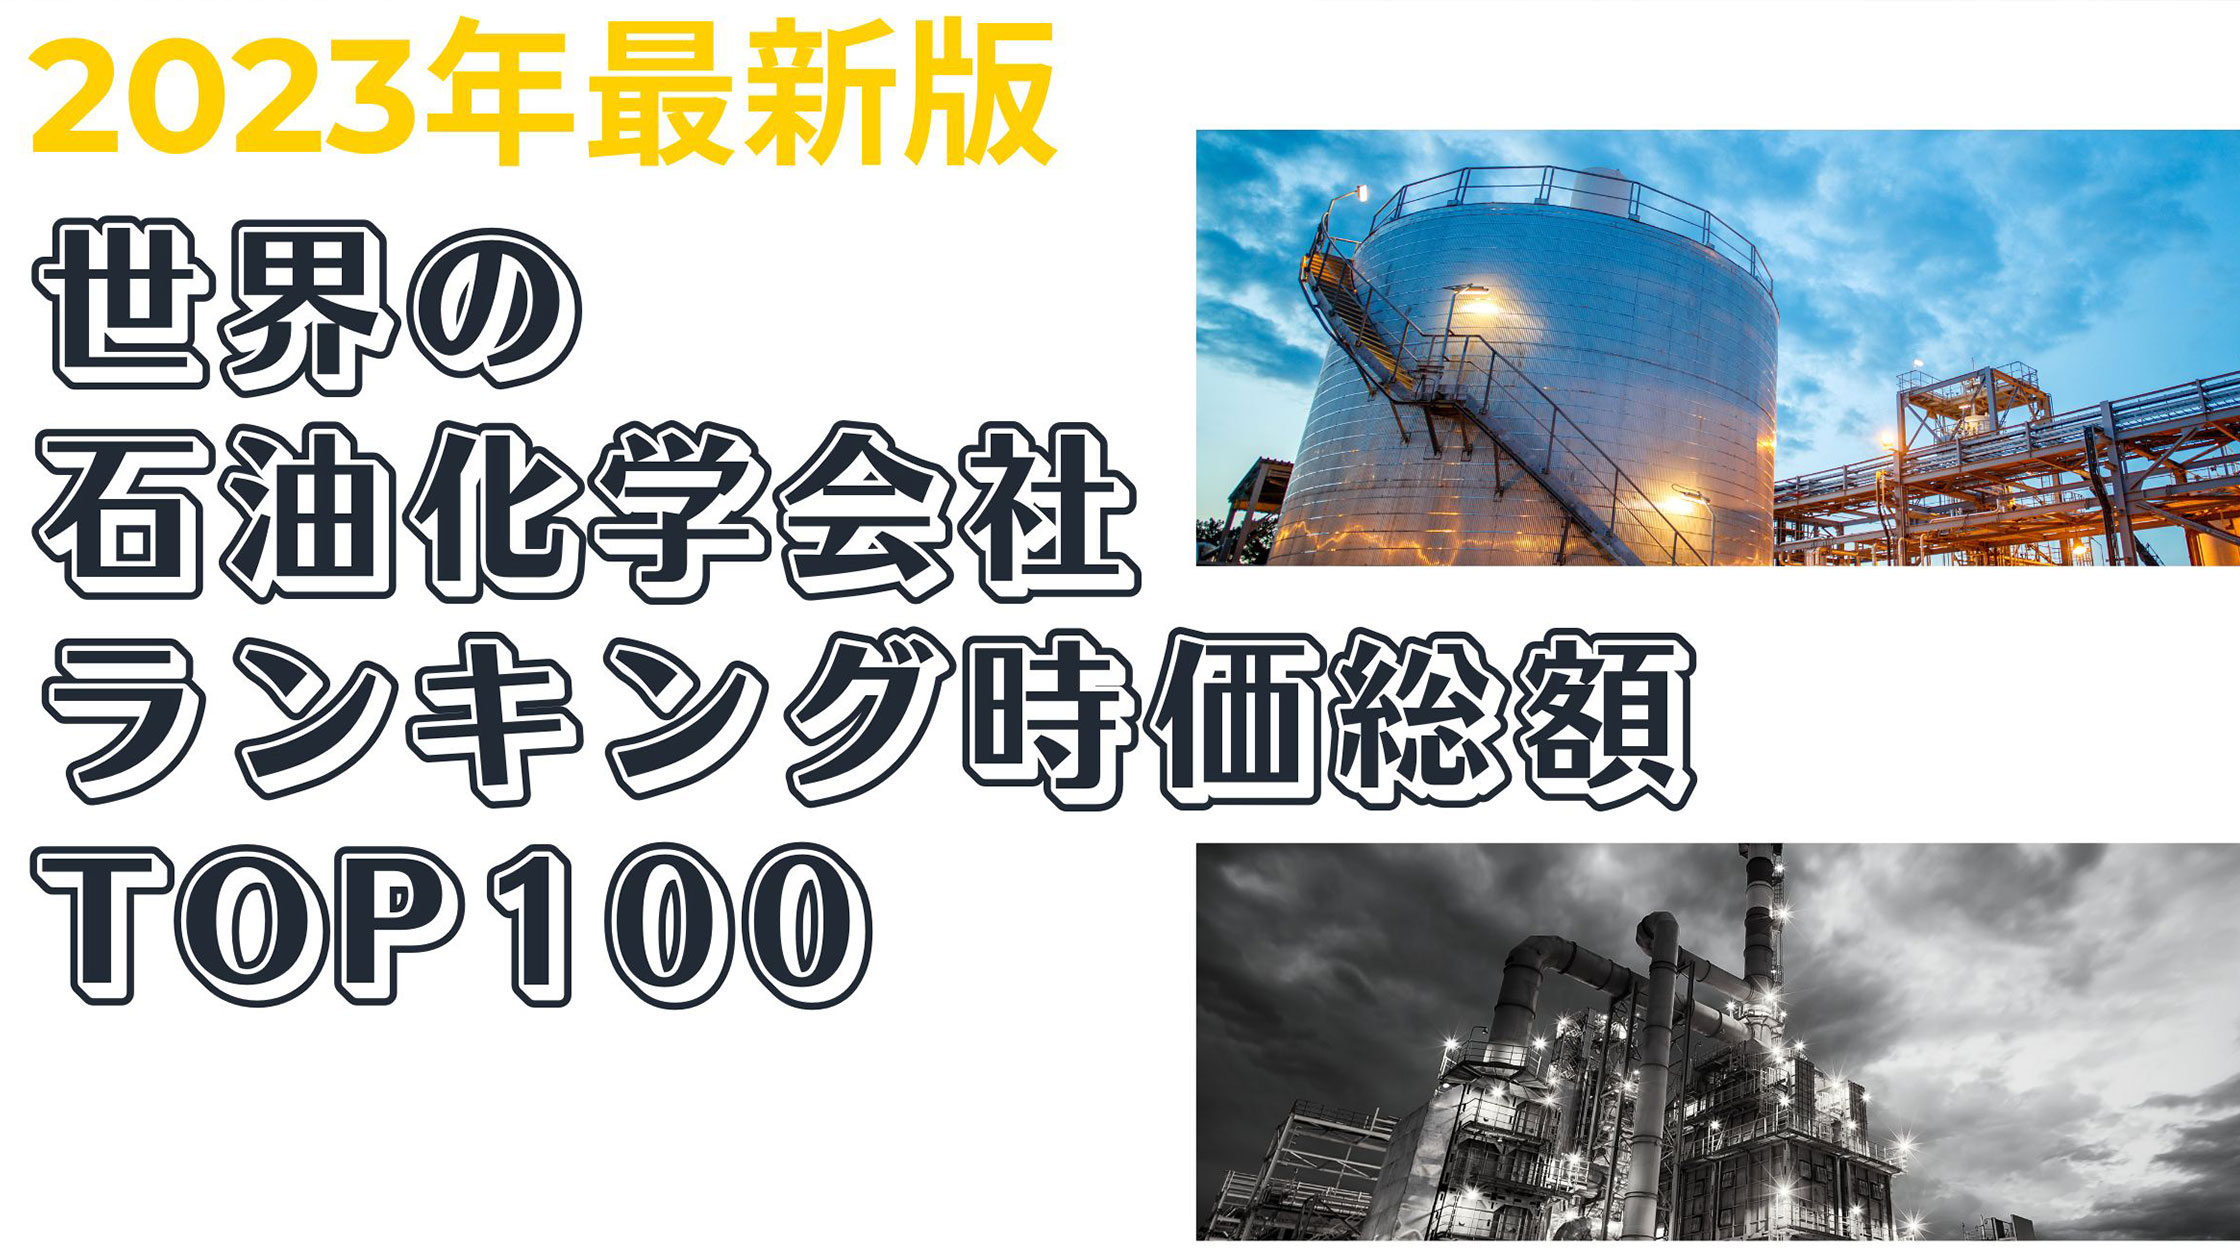 日本の石油化学工業 2023年版 【ご予約品】 - ビジネス・経済